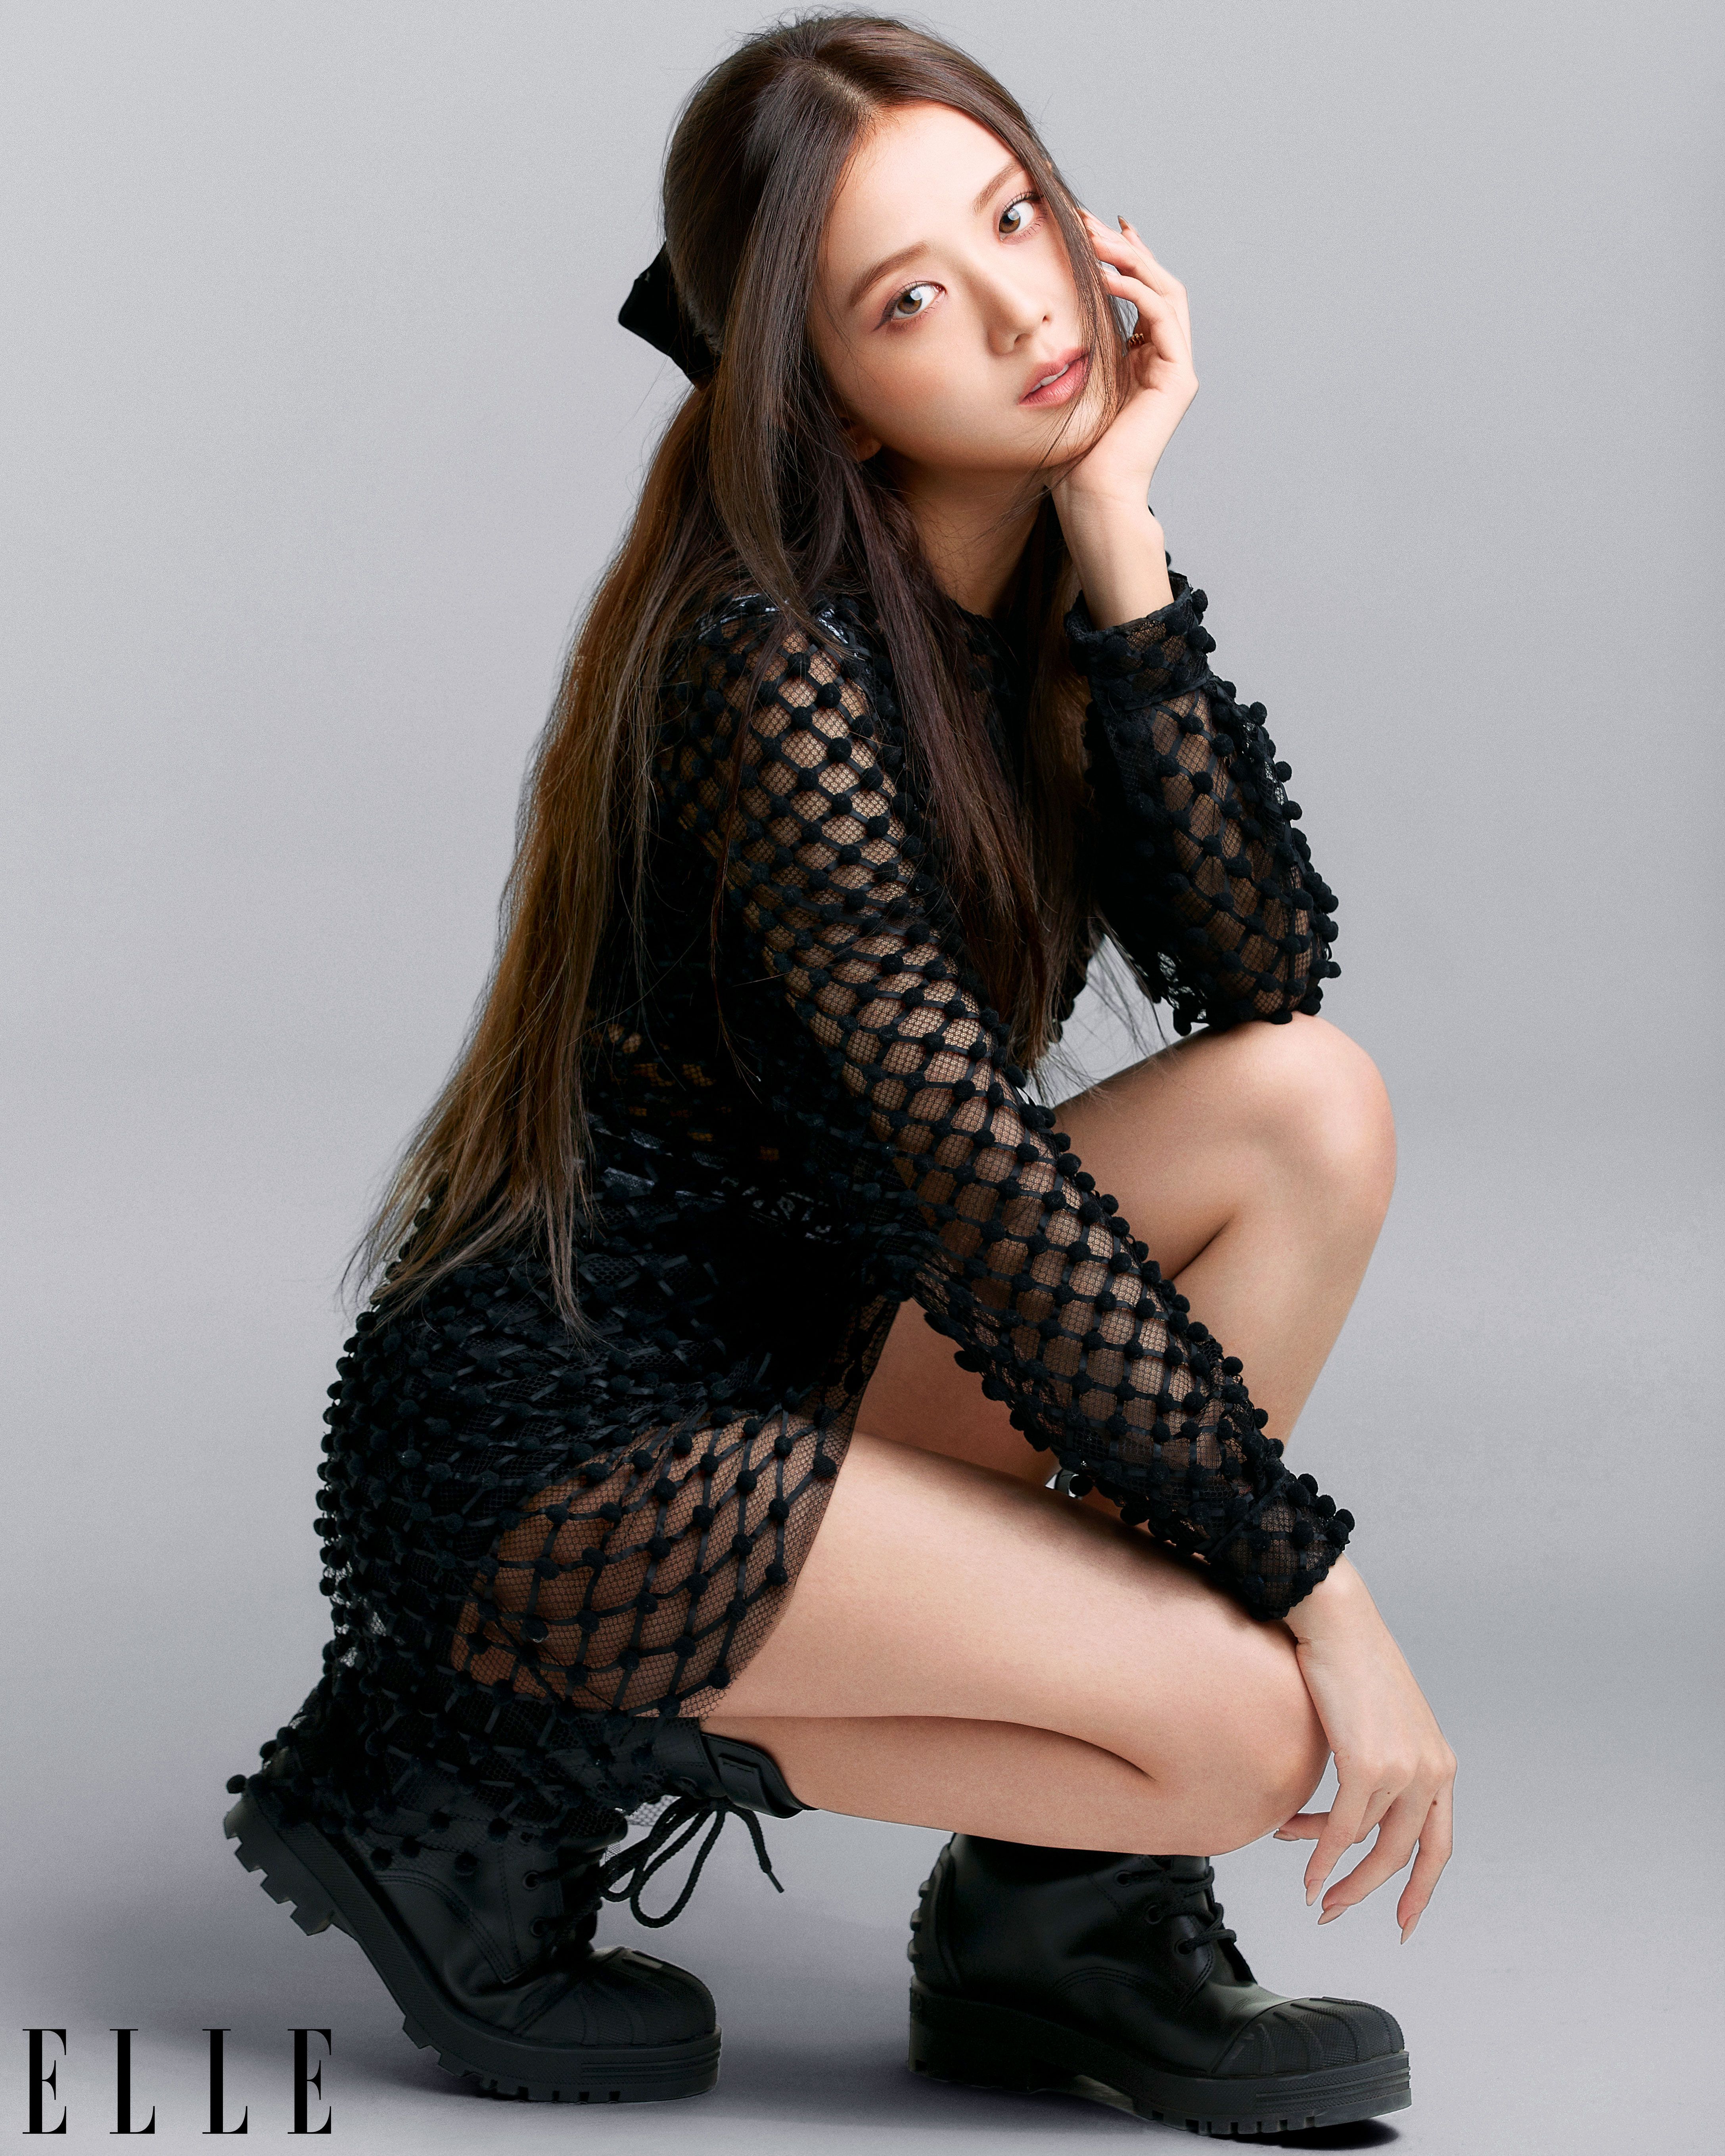 Blackpink Lisa for Elle Korea April 2021 Pictorial (HD/HQ) - K-Pop Database  /